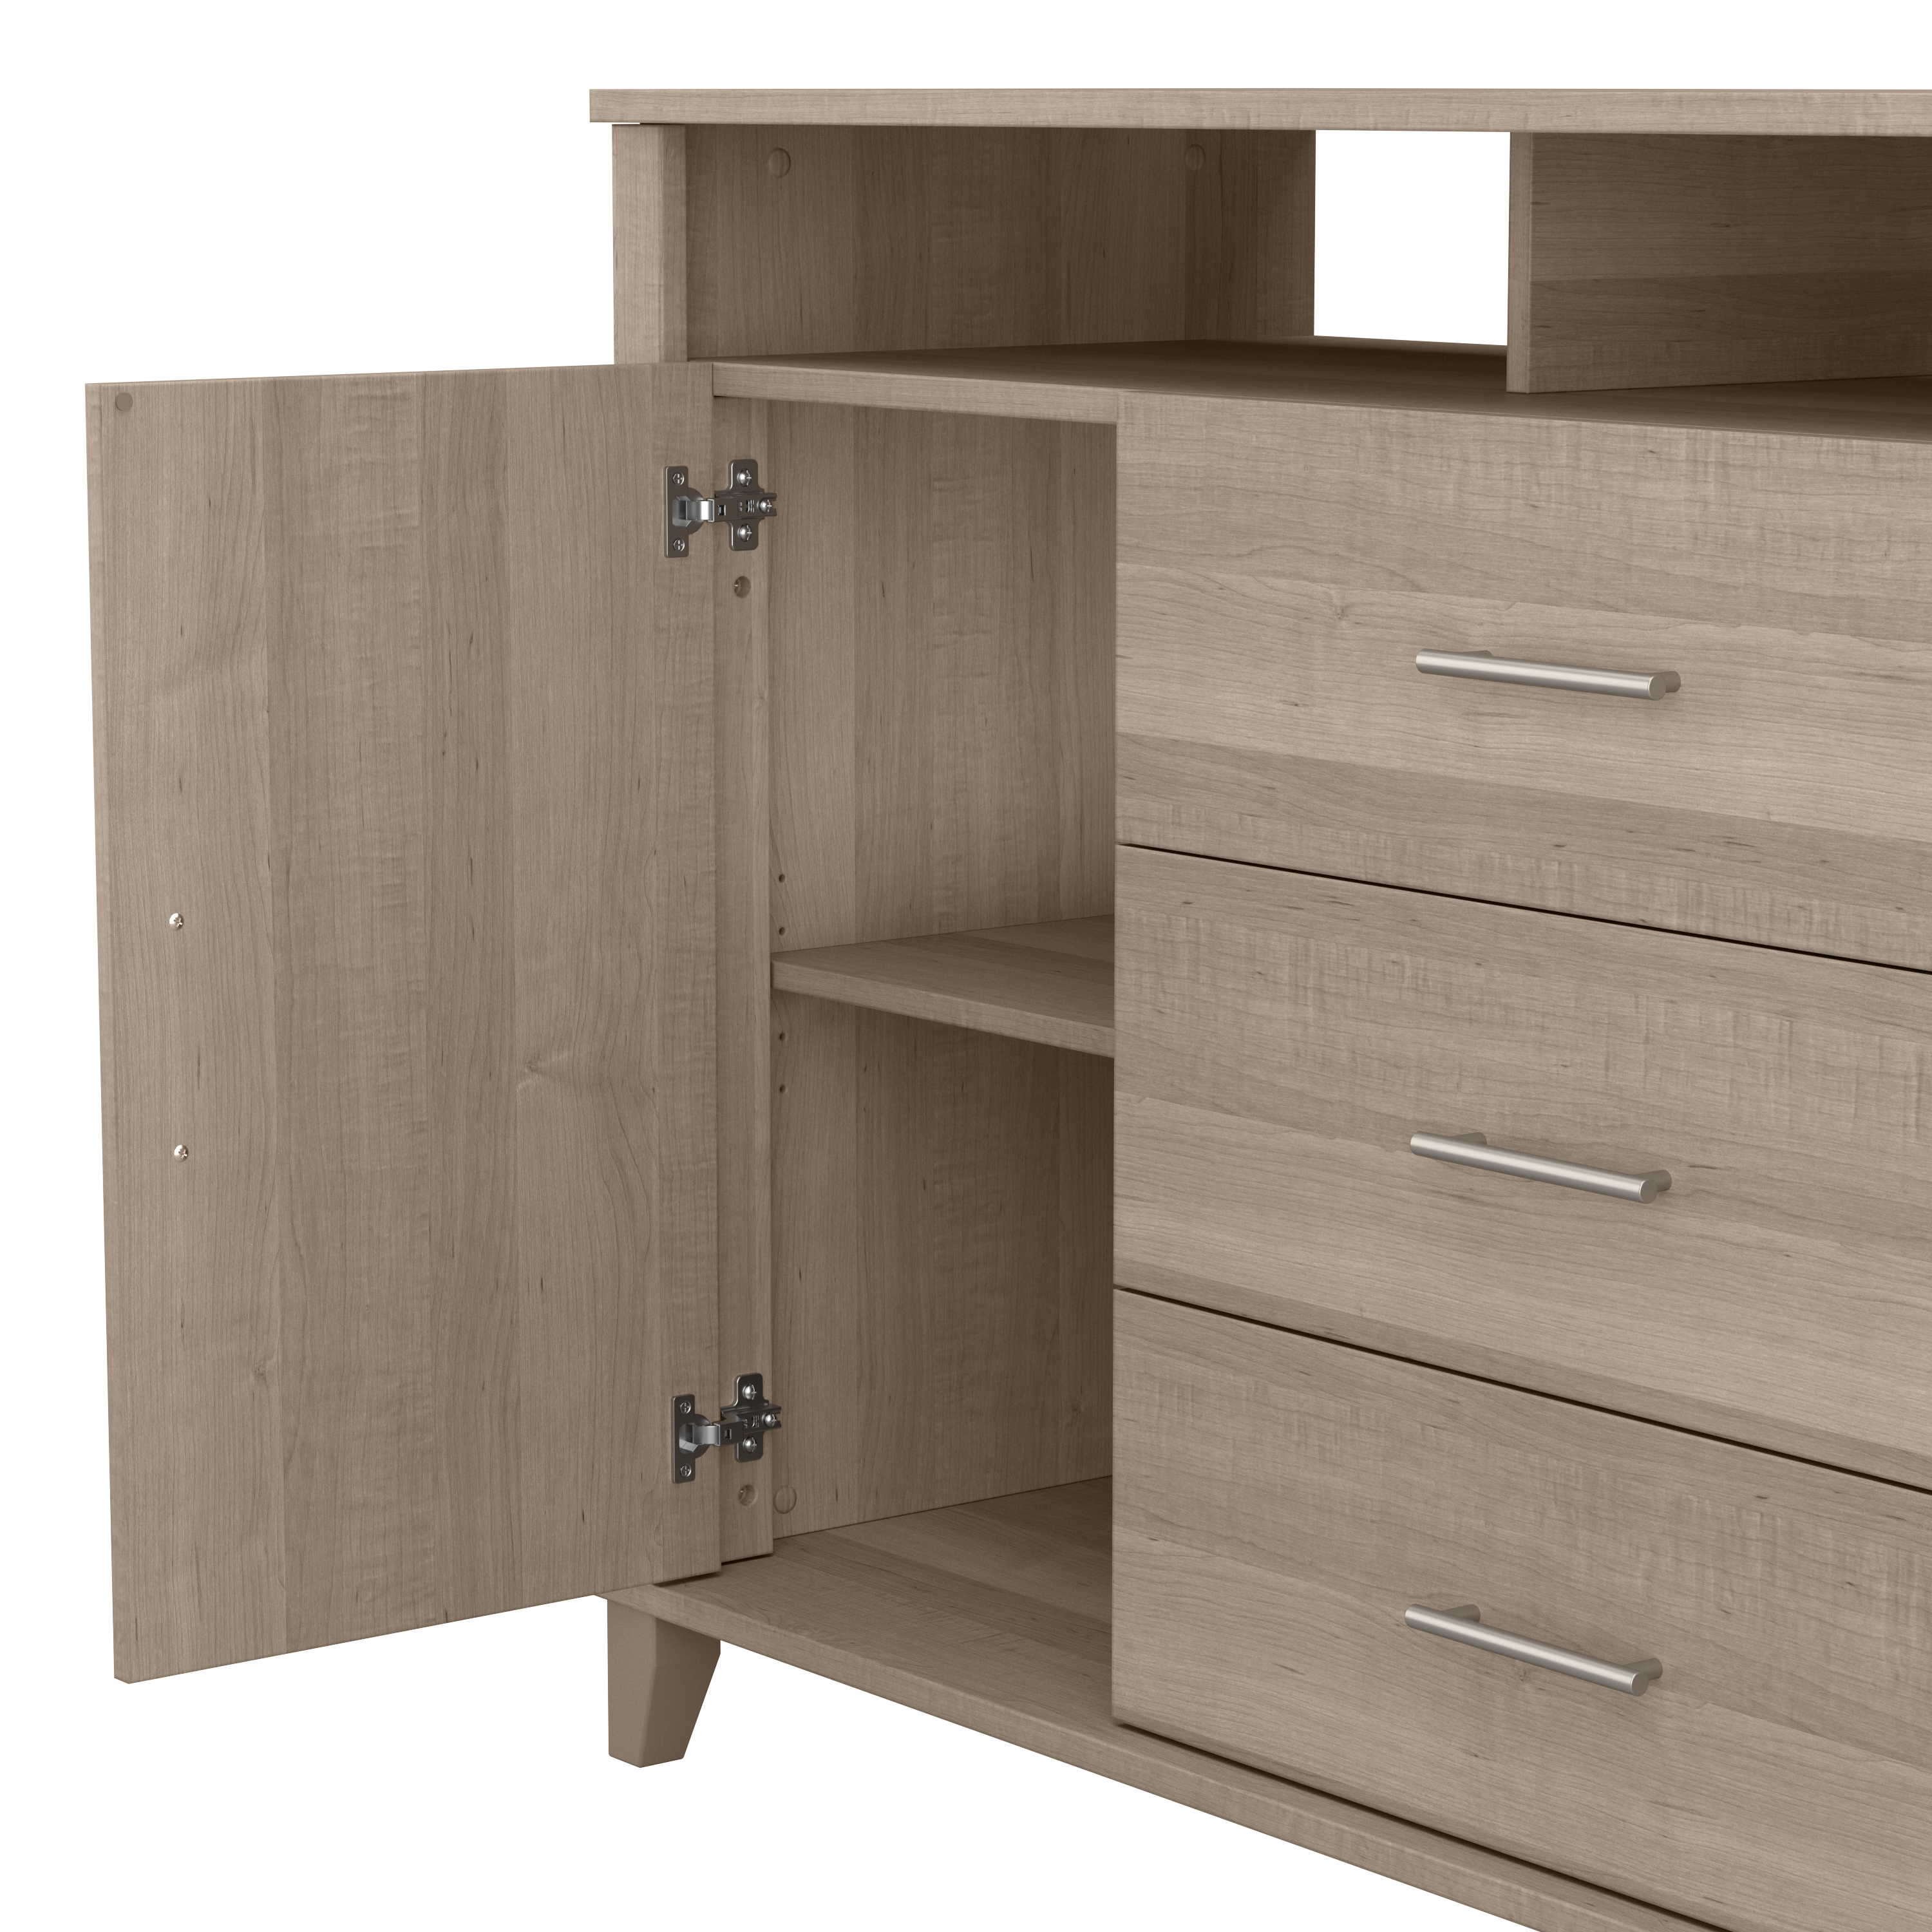 Shop Bush Furniture Somerset 3 Drawer Dresser and Bedroom TV Stand 04 STV148AGK #color_ash gray